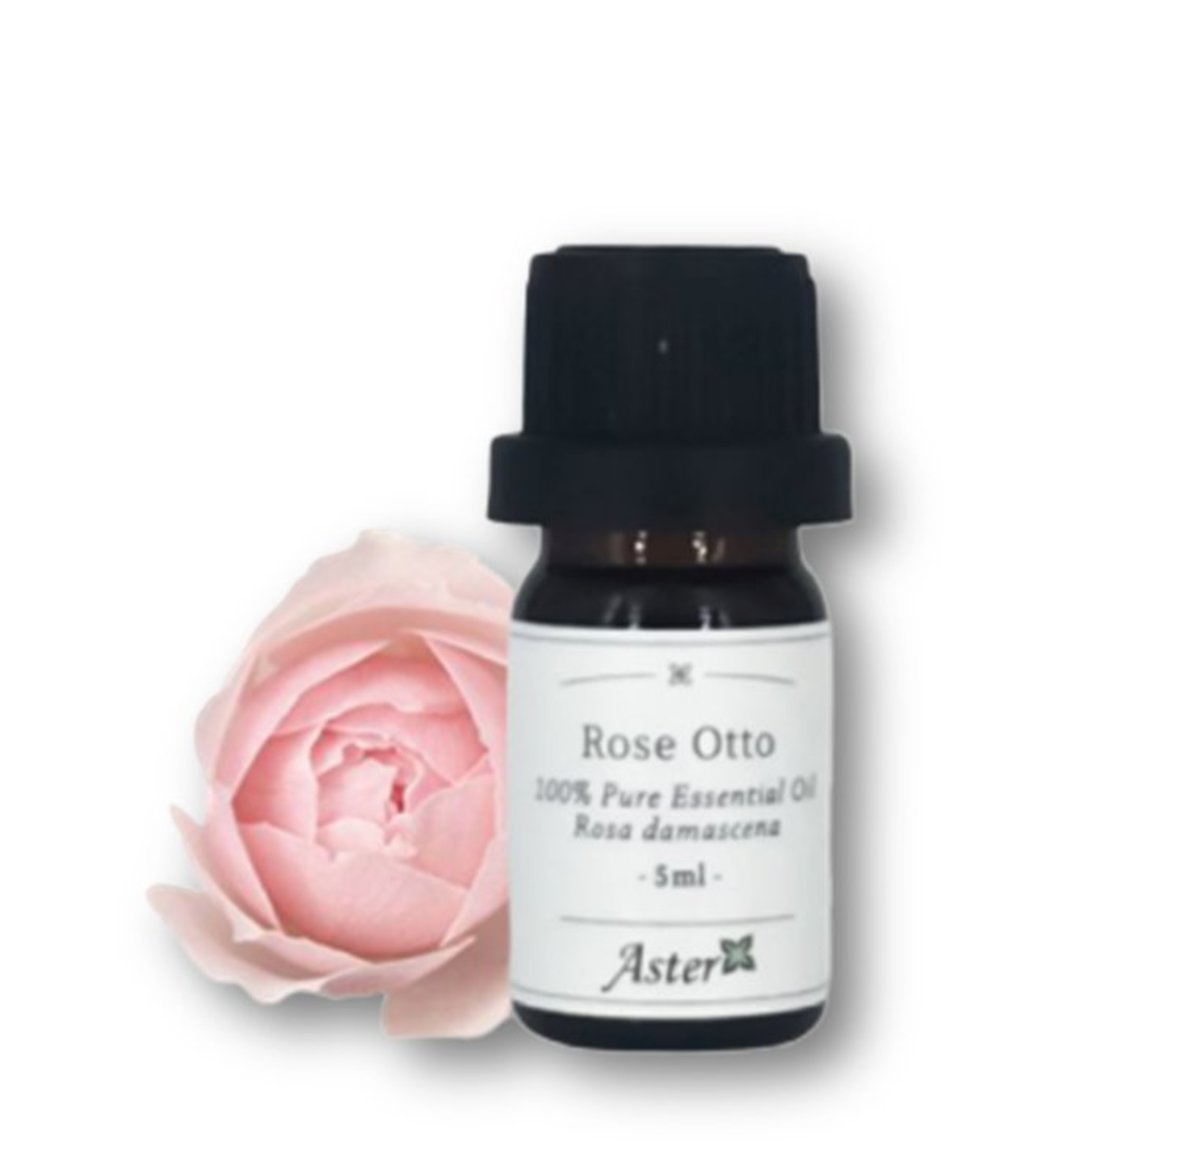 Rose Otto 100% Pure Essential Oil (Rosa damascena) - 5ml